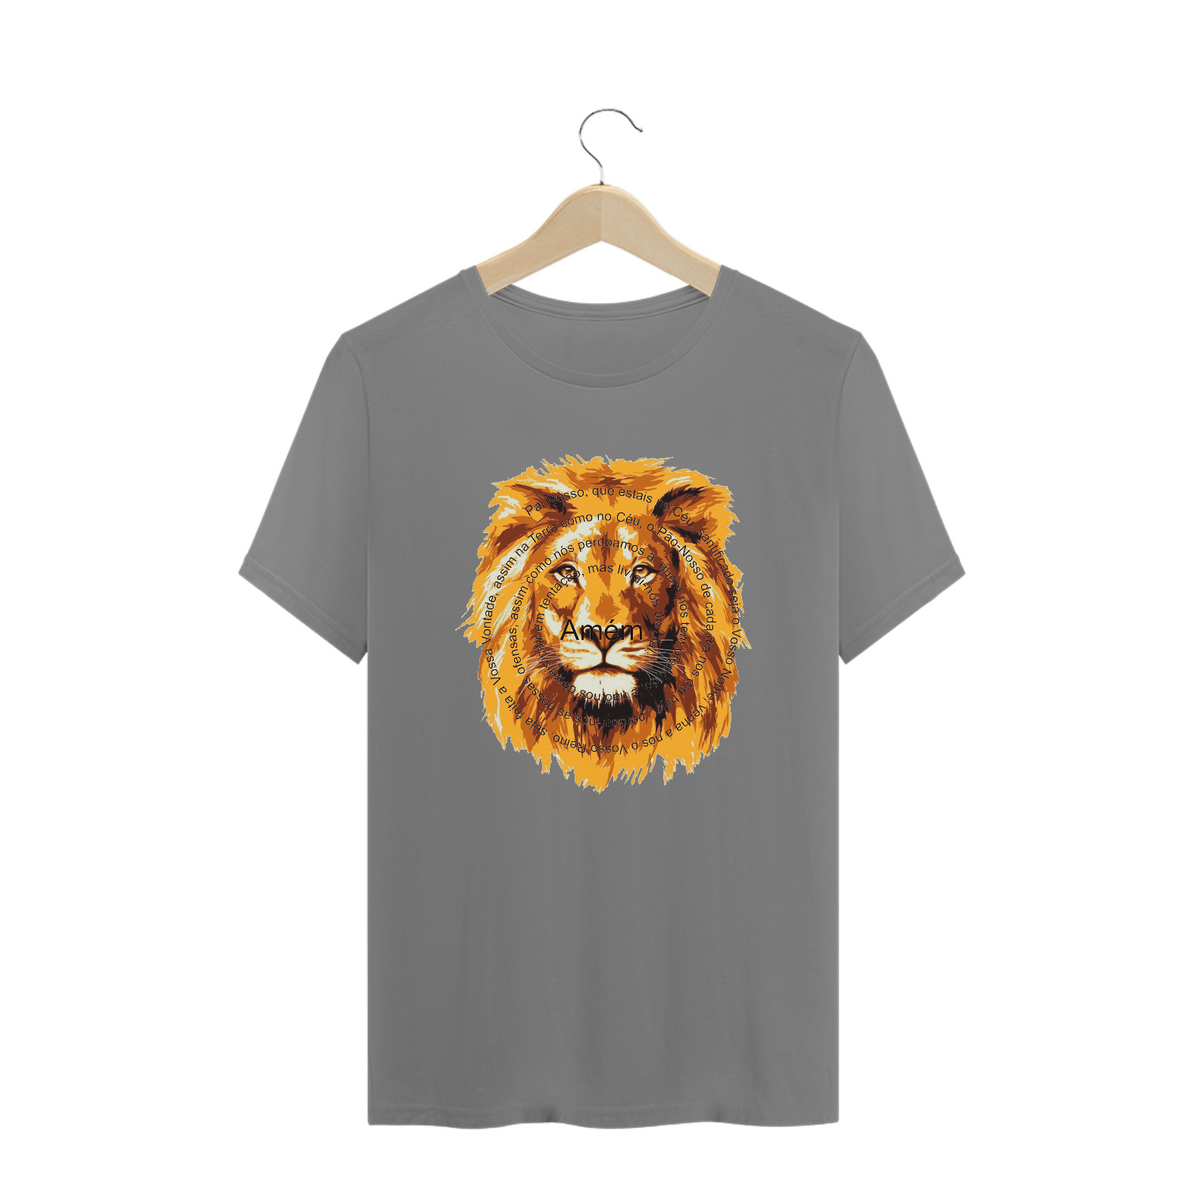 Nome do produto: Camiseta Plus size Leão de Judá com o Pai Nosso